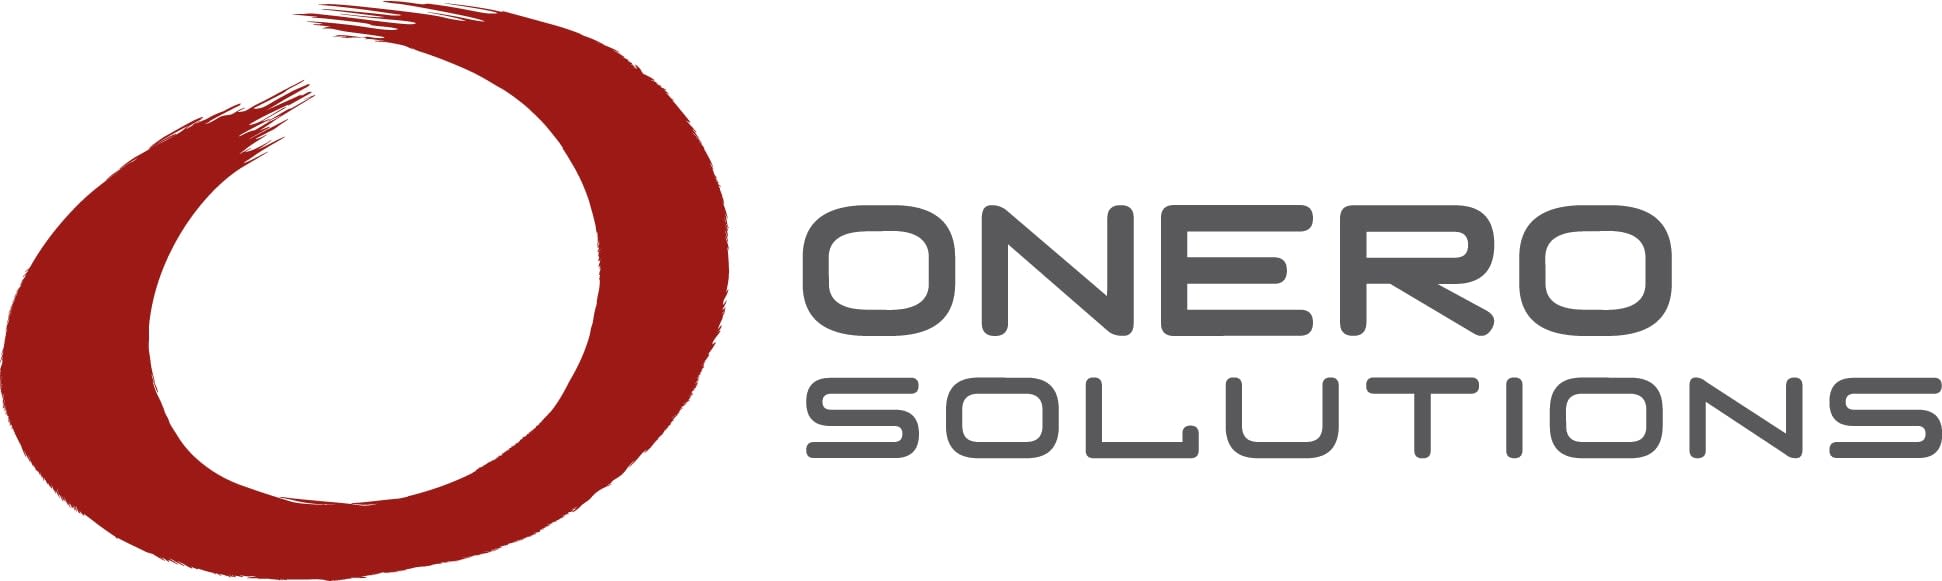 ONERO Solutions-1